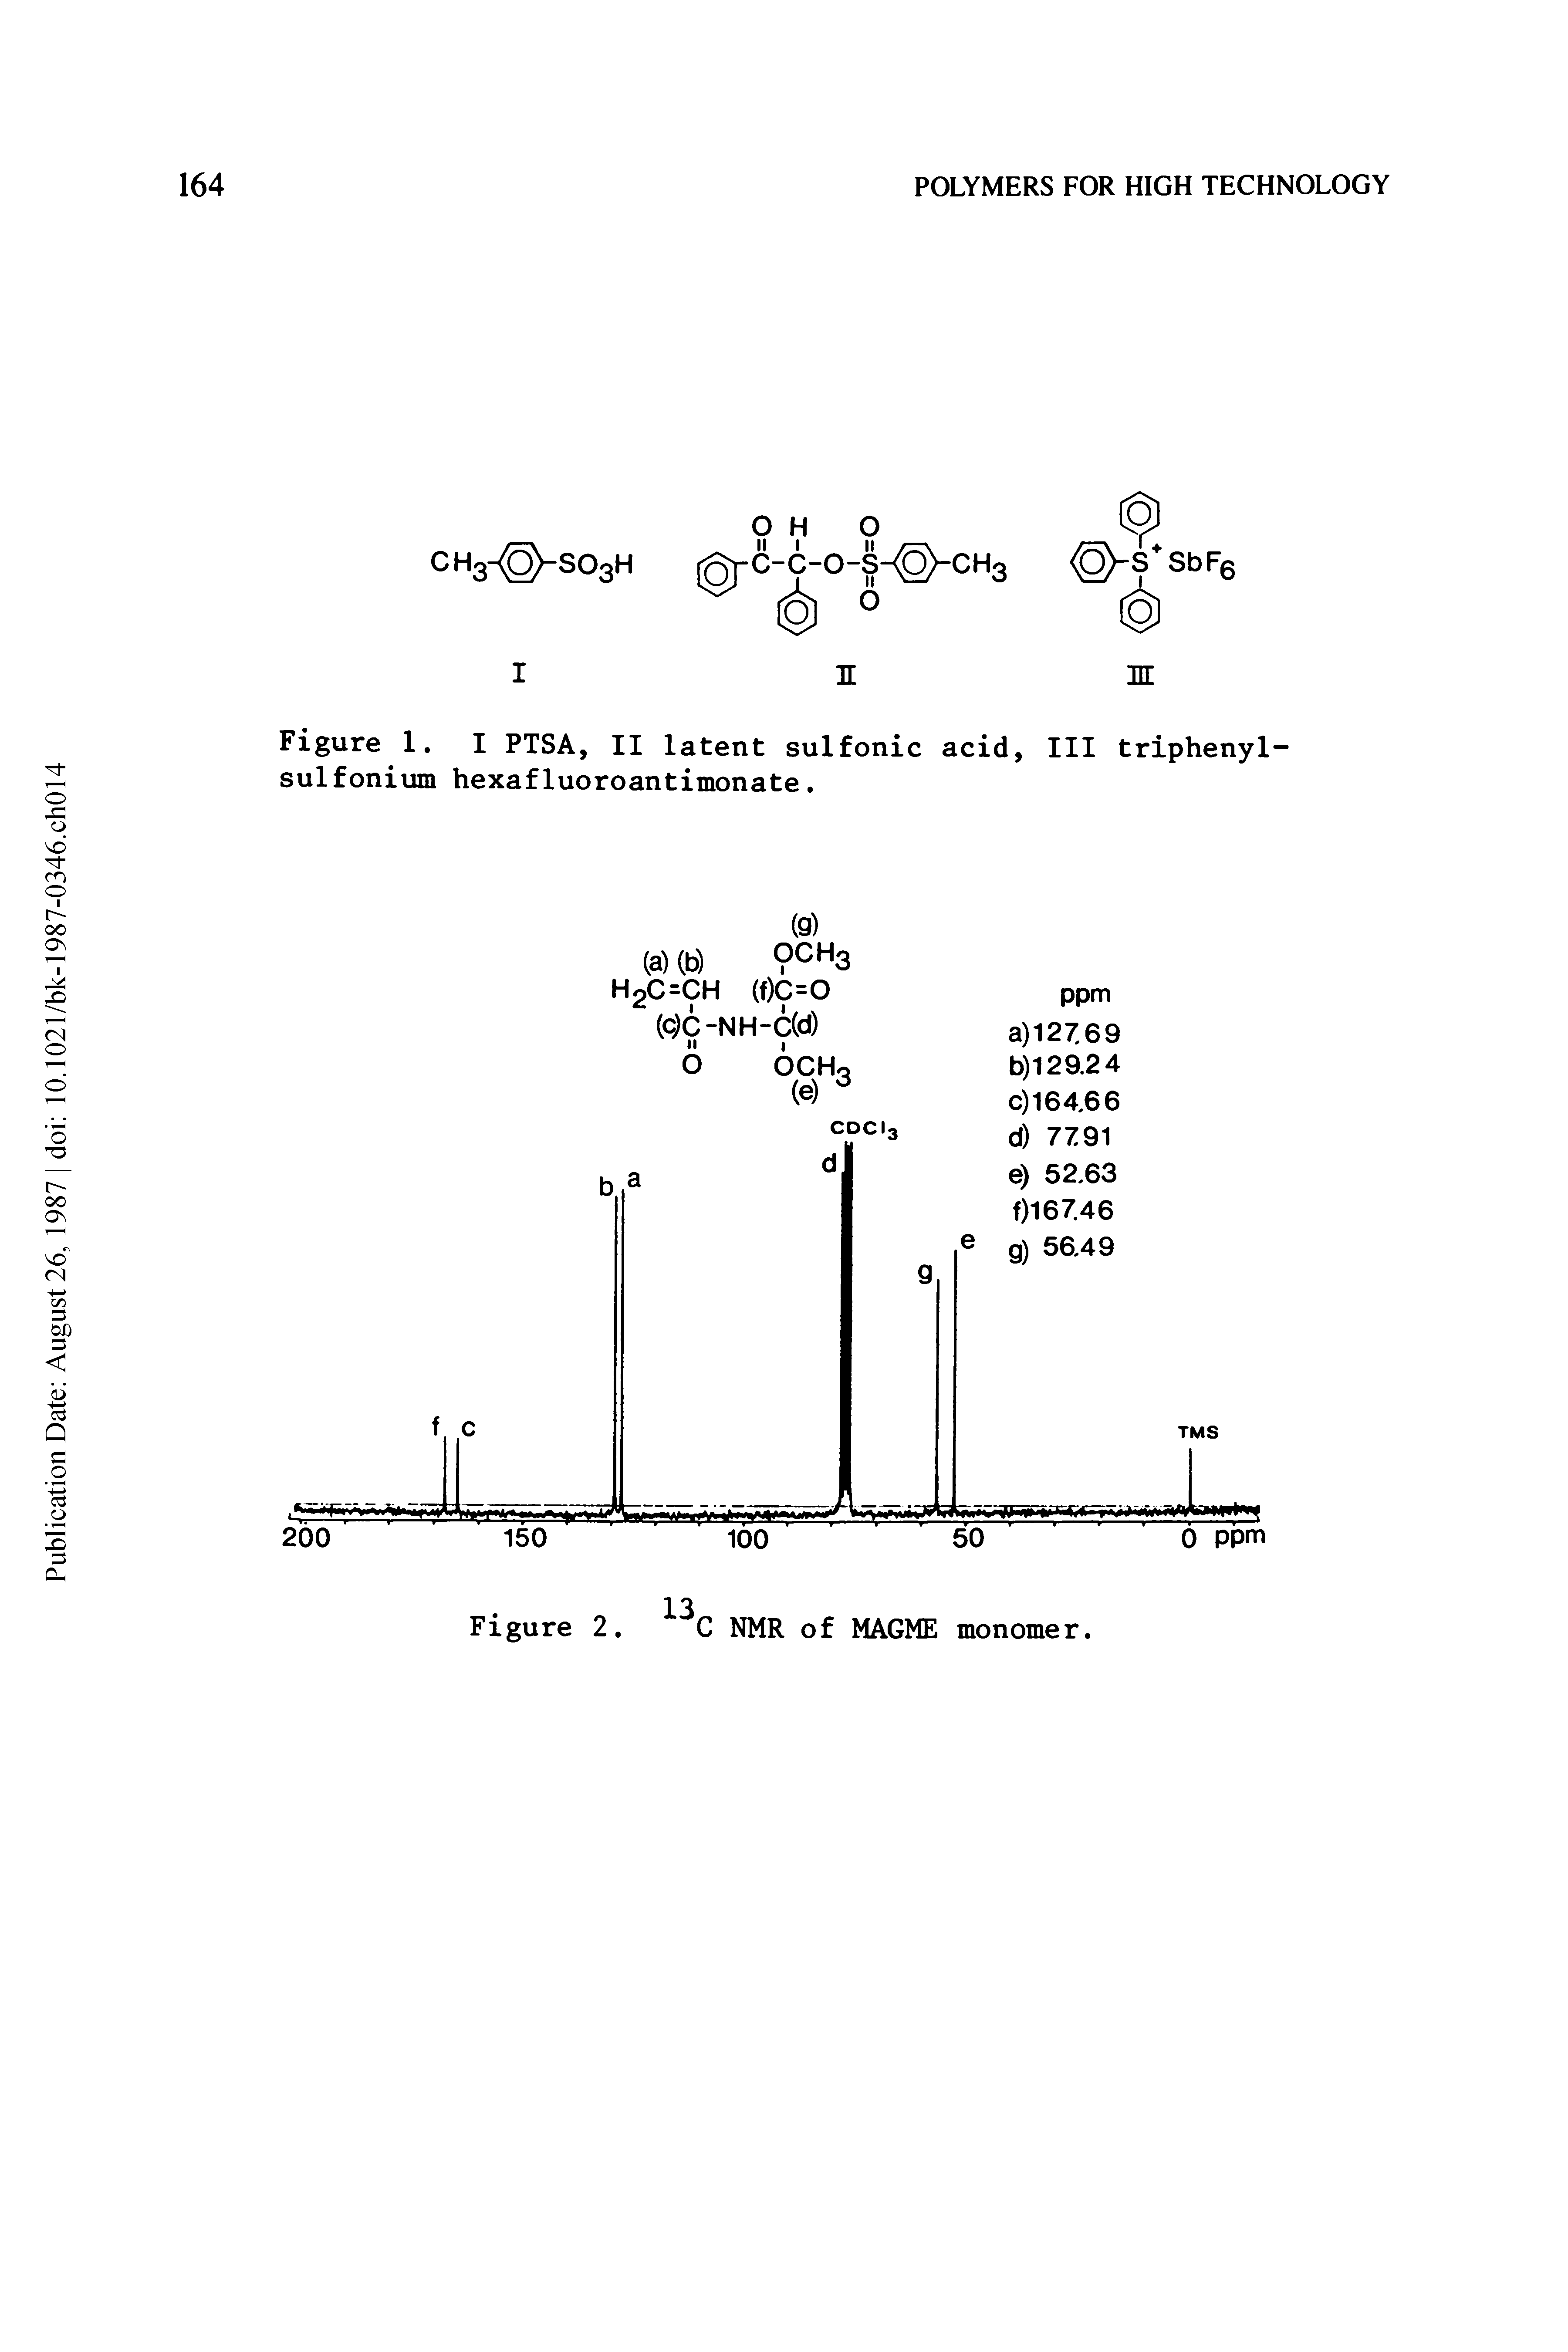 Figure 1. I PTSA, II latent sulfonic acid, III triphenyl-sulfonium hexafluoroantimonate.